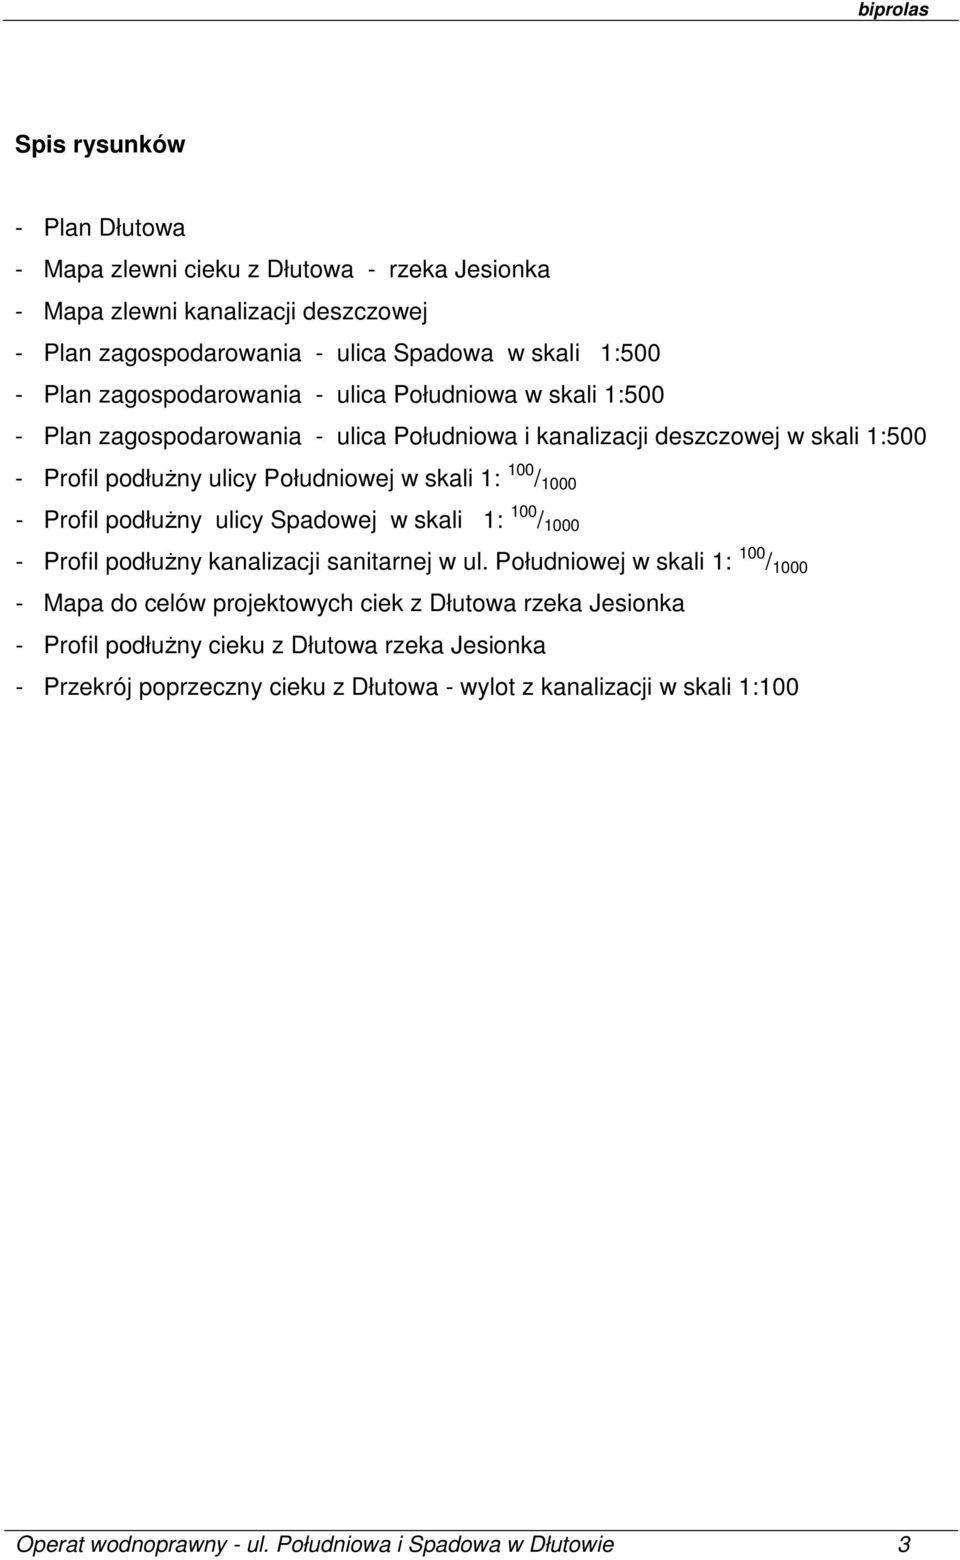 1000 - Profil podłużny ulicy Spadowej w skali 1: 100 / 1000 - Profil podłużny kanalizacji sanitarnej w ul.